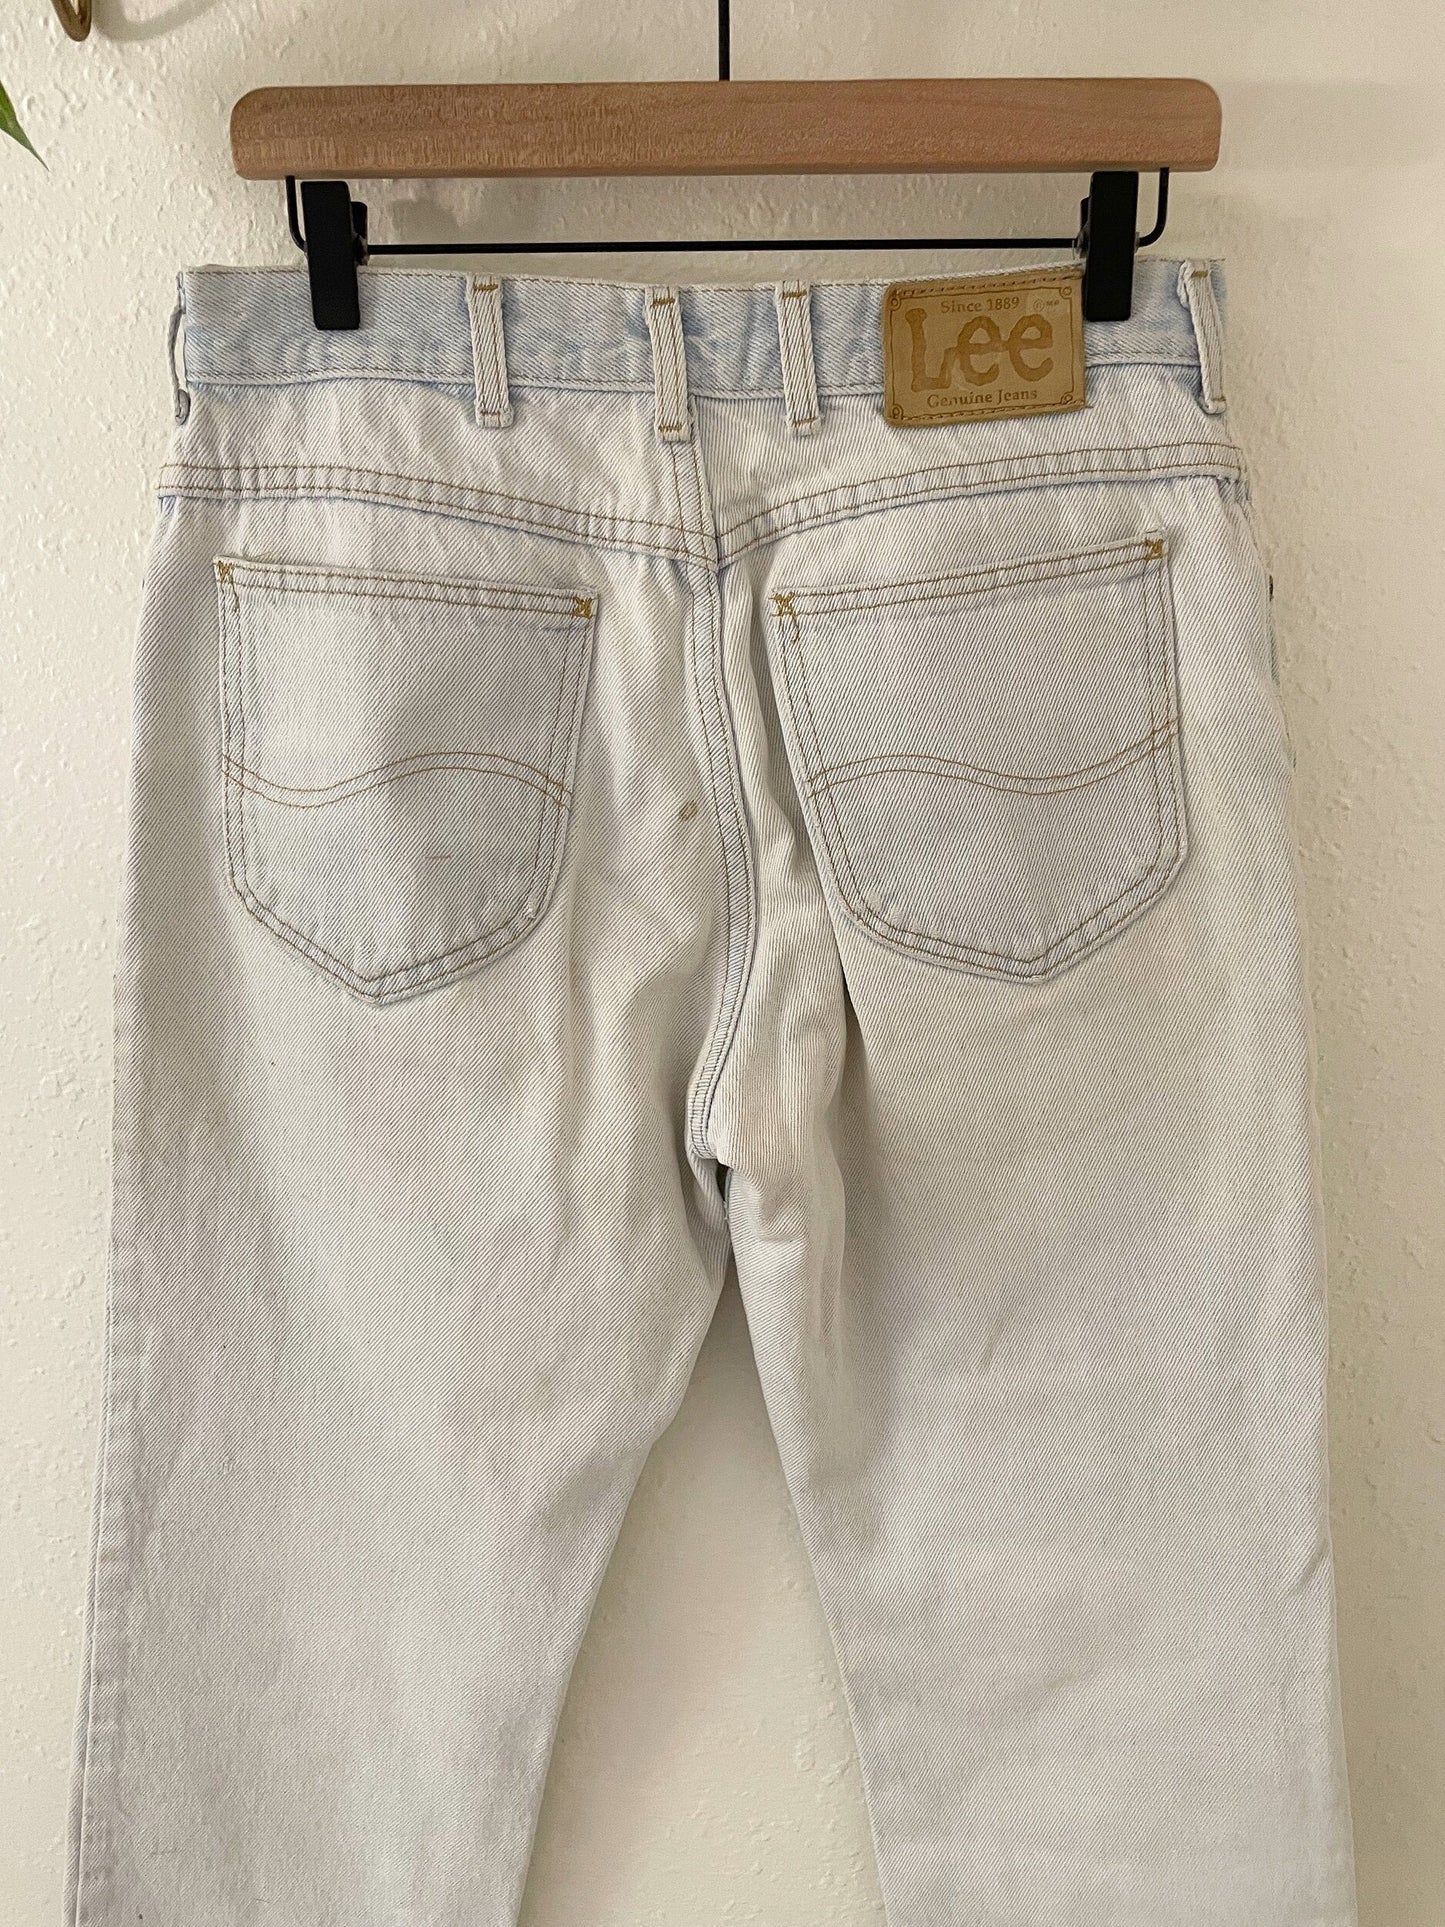 vintage Lee patchwork jeans